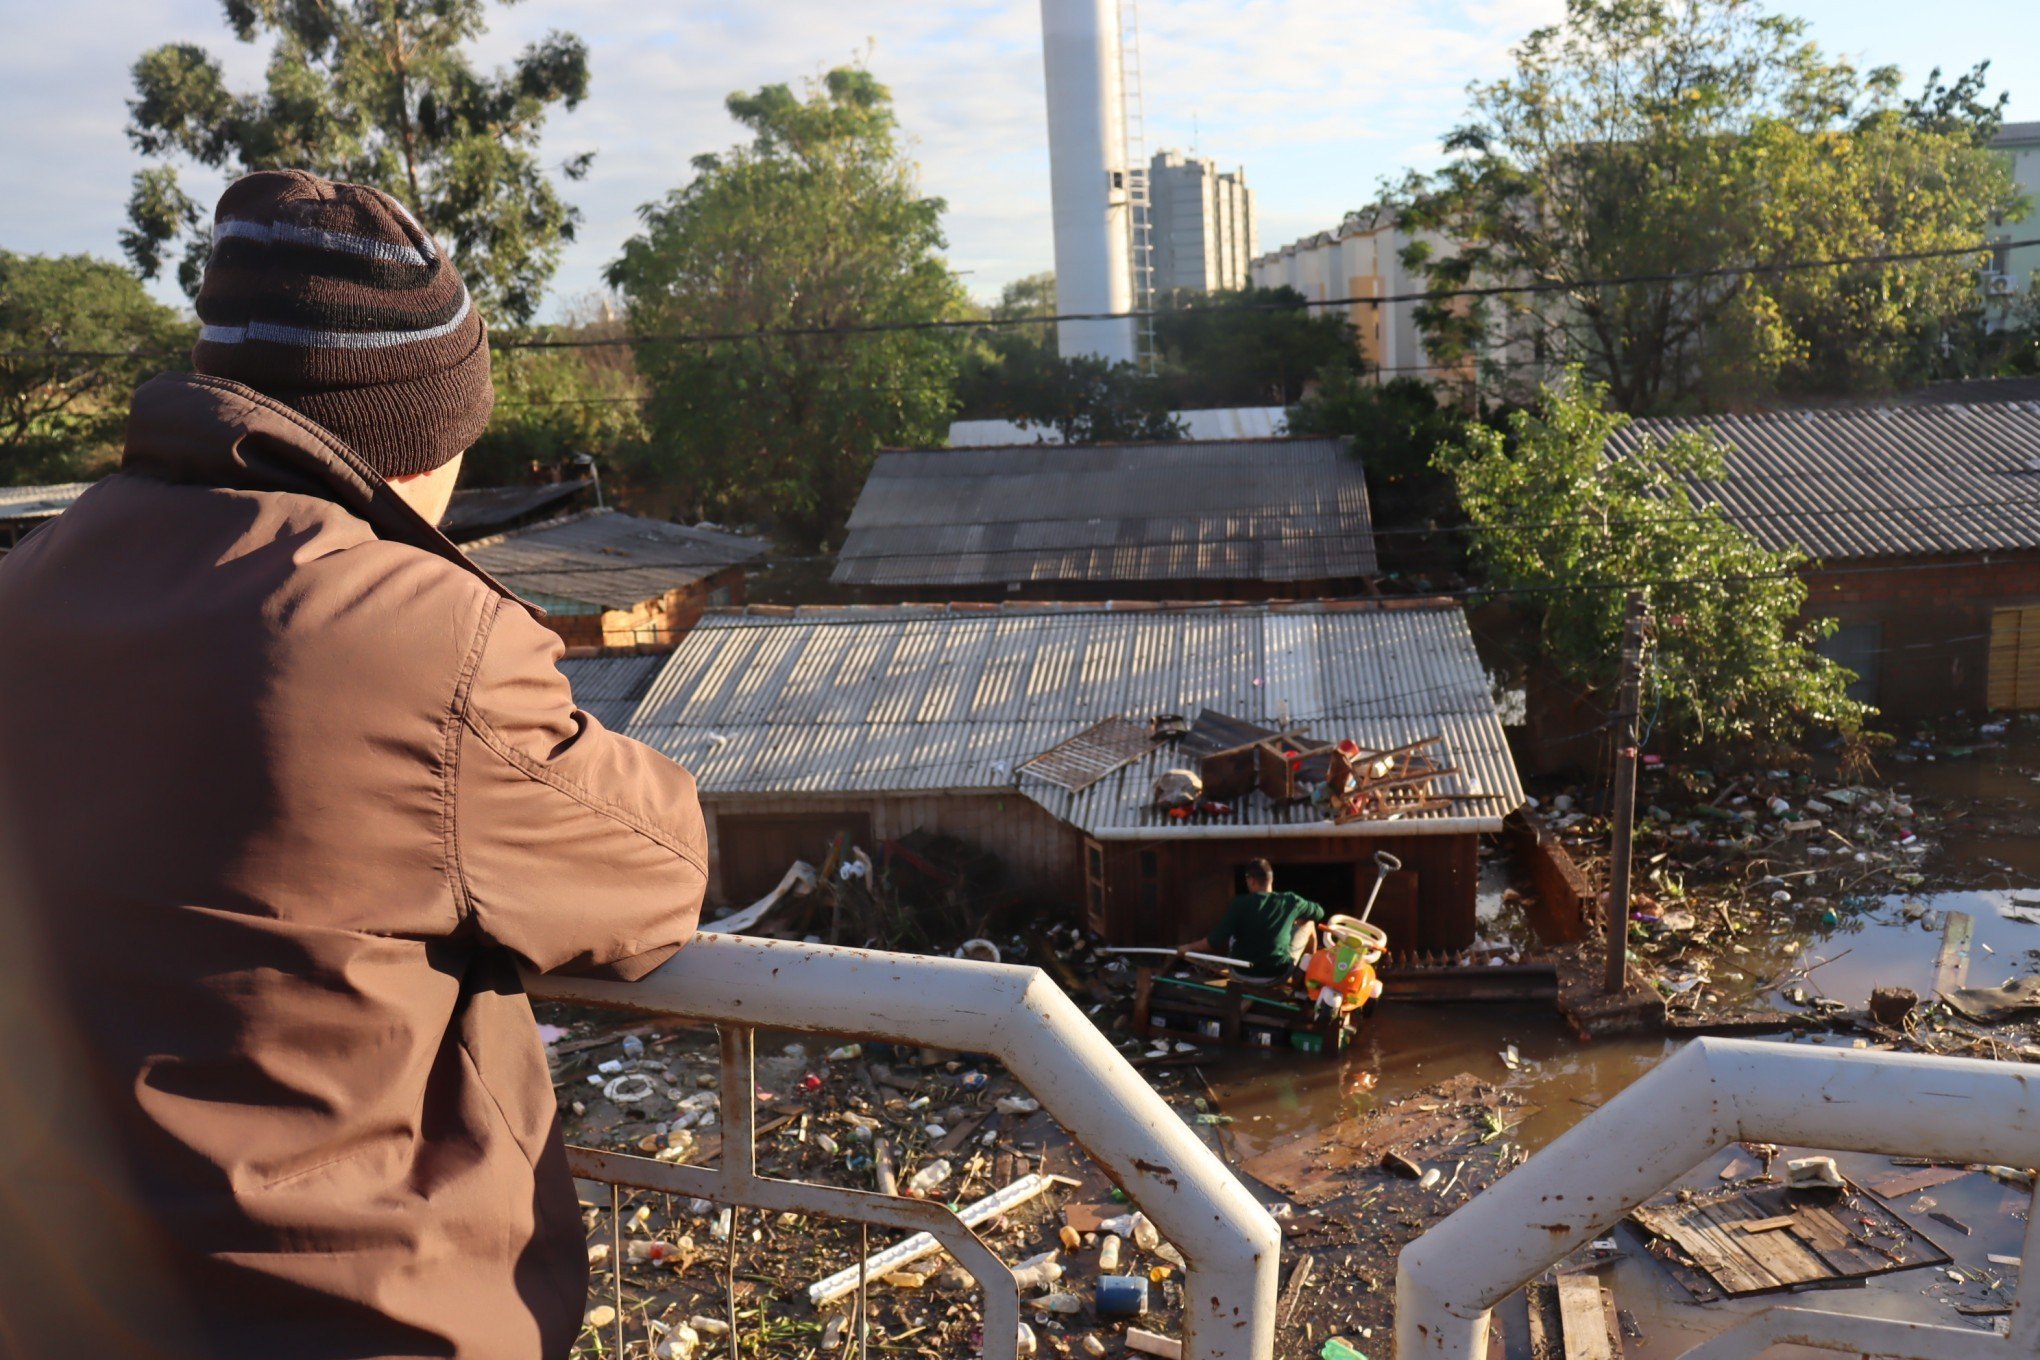 "Vou ter que desmanchar a casa de novo", conta morador do bairro Rio dos Sinos